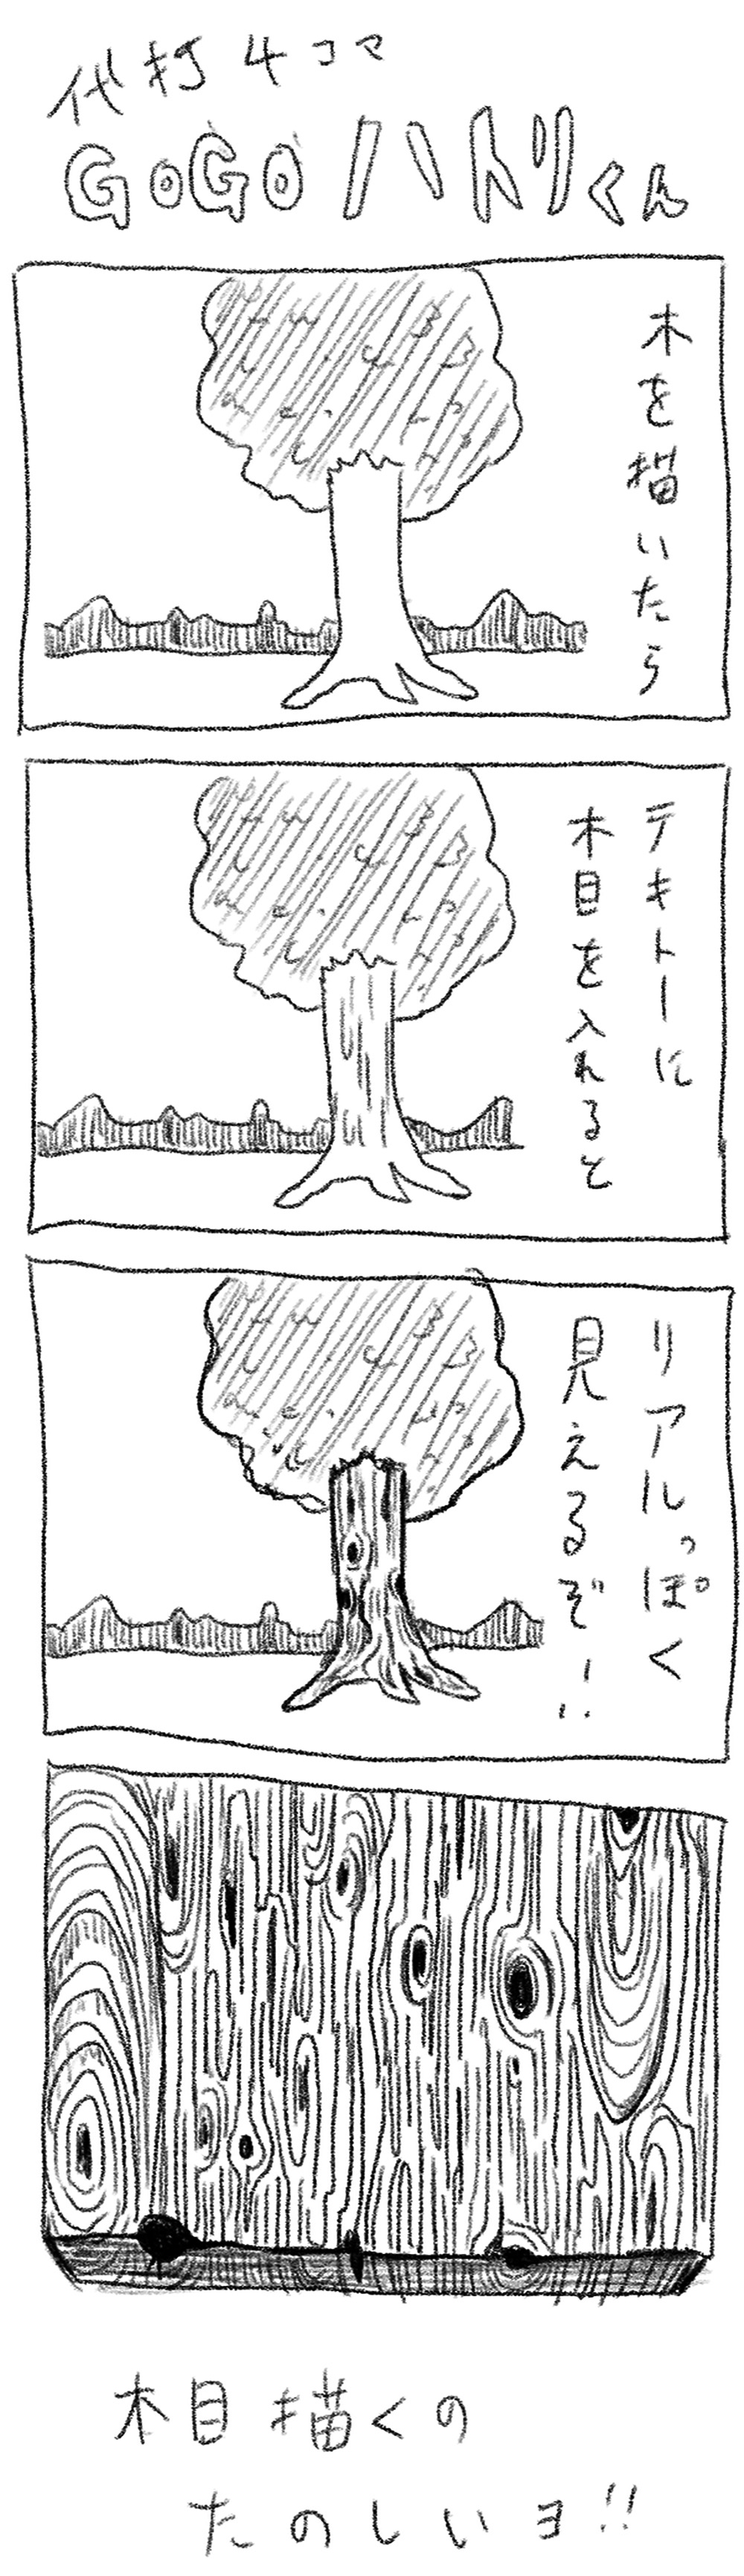 代打4コマ 第15回 たのしい木の描き方 Gogoハトリくん ロケットニュース24